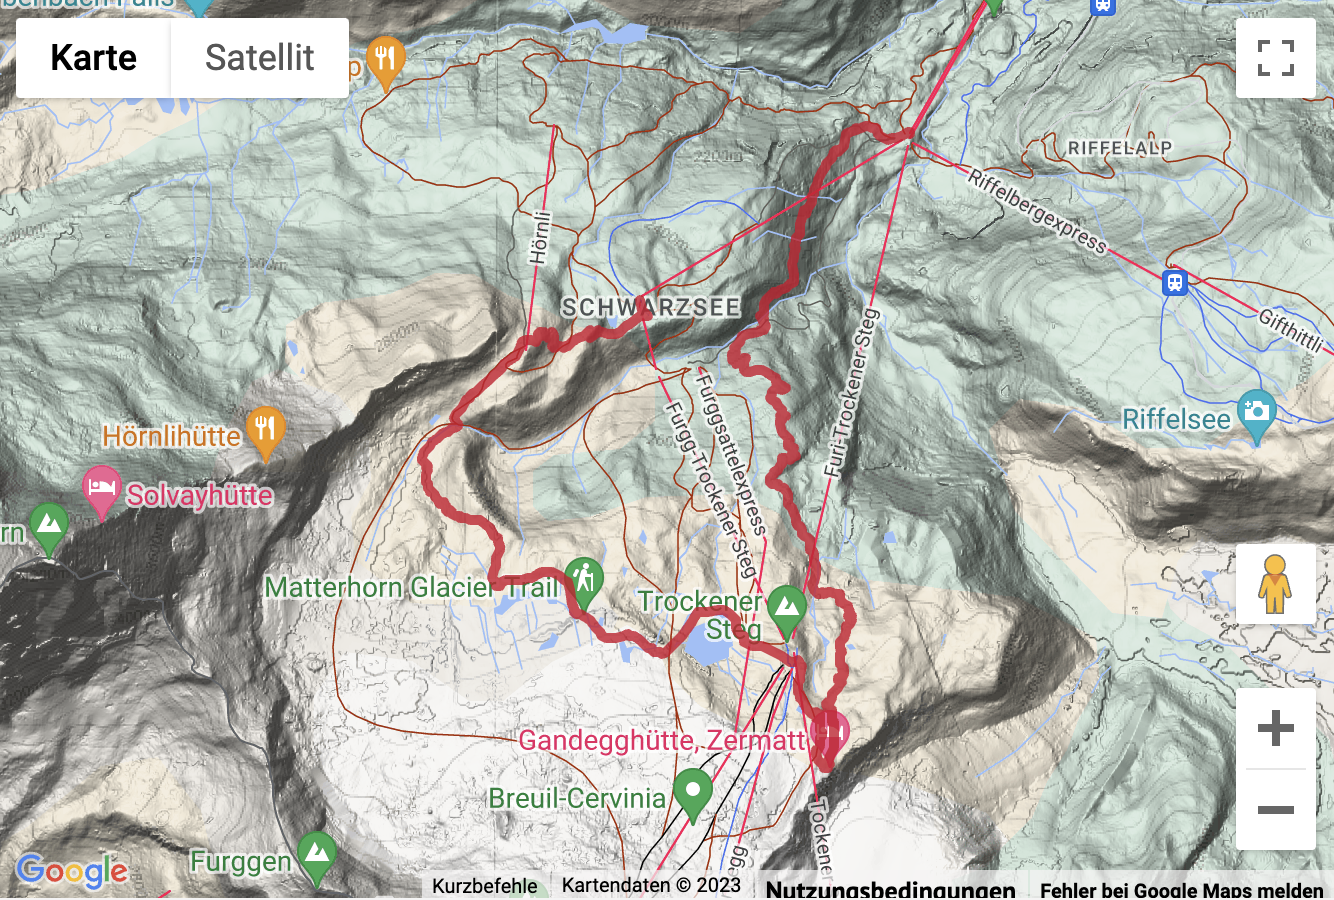 Übersichts-Routenkarte für die Bergwanderung Schwarzsee - Gandegghütte - Furi